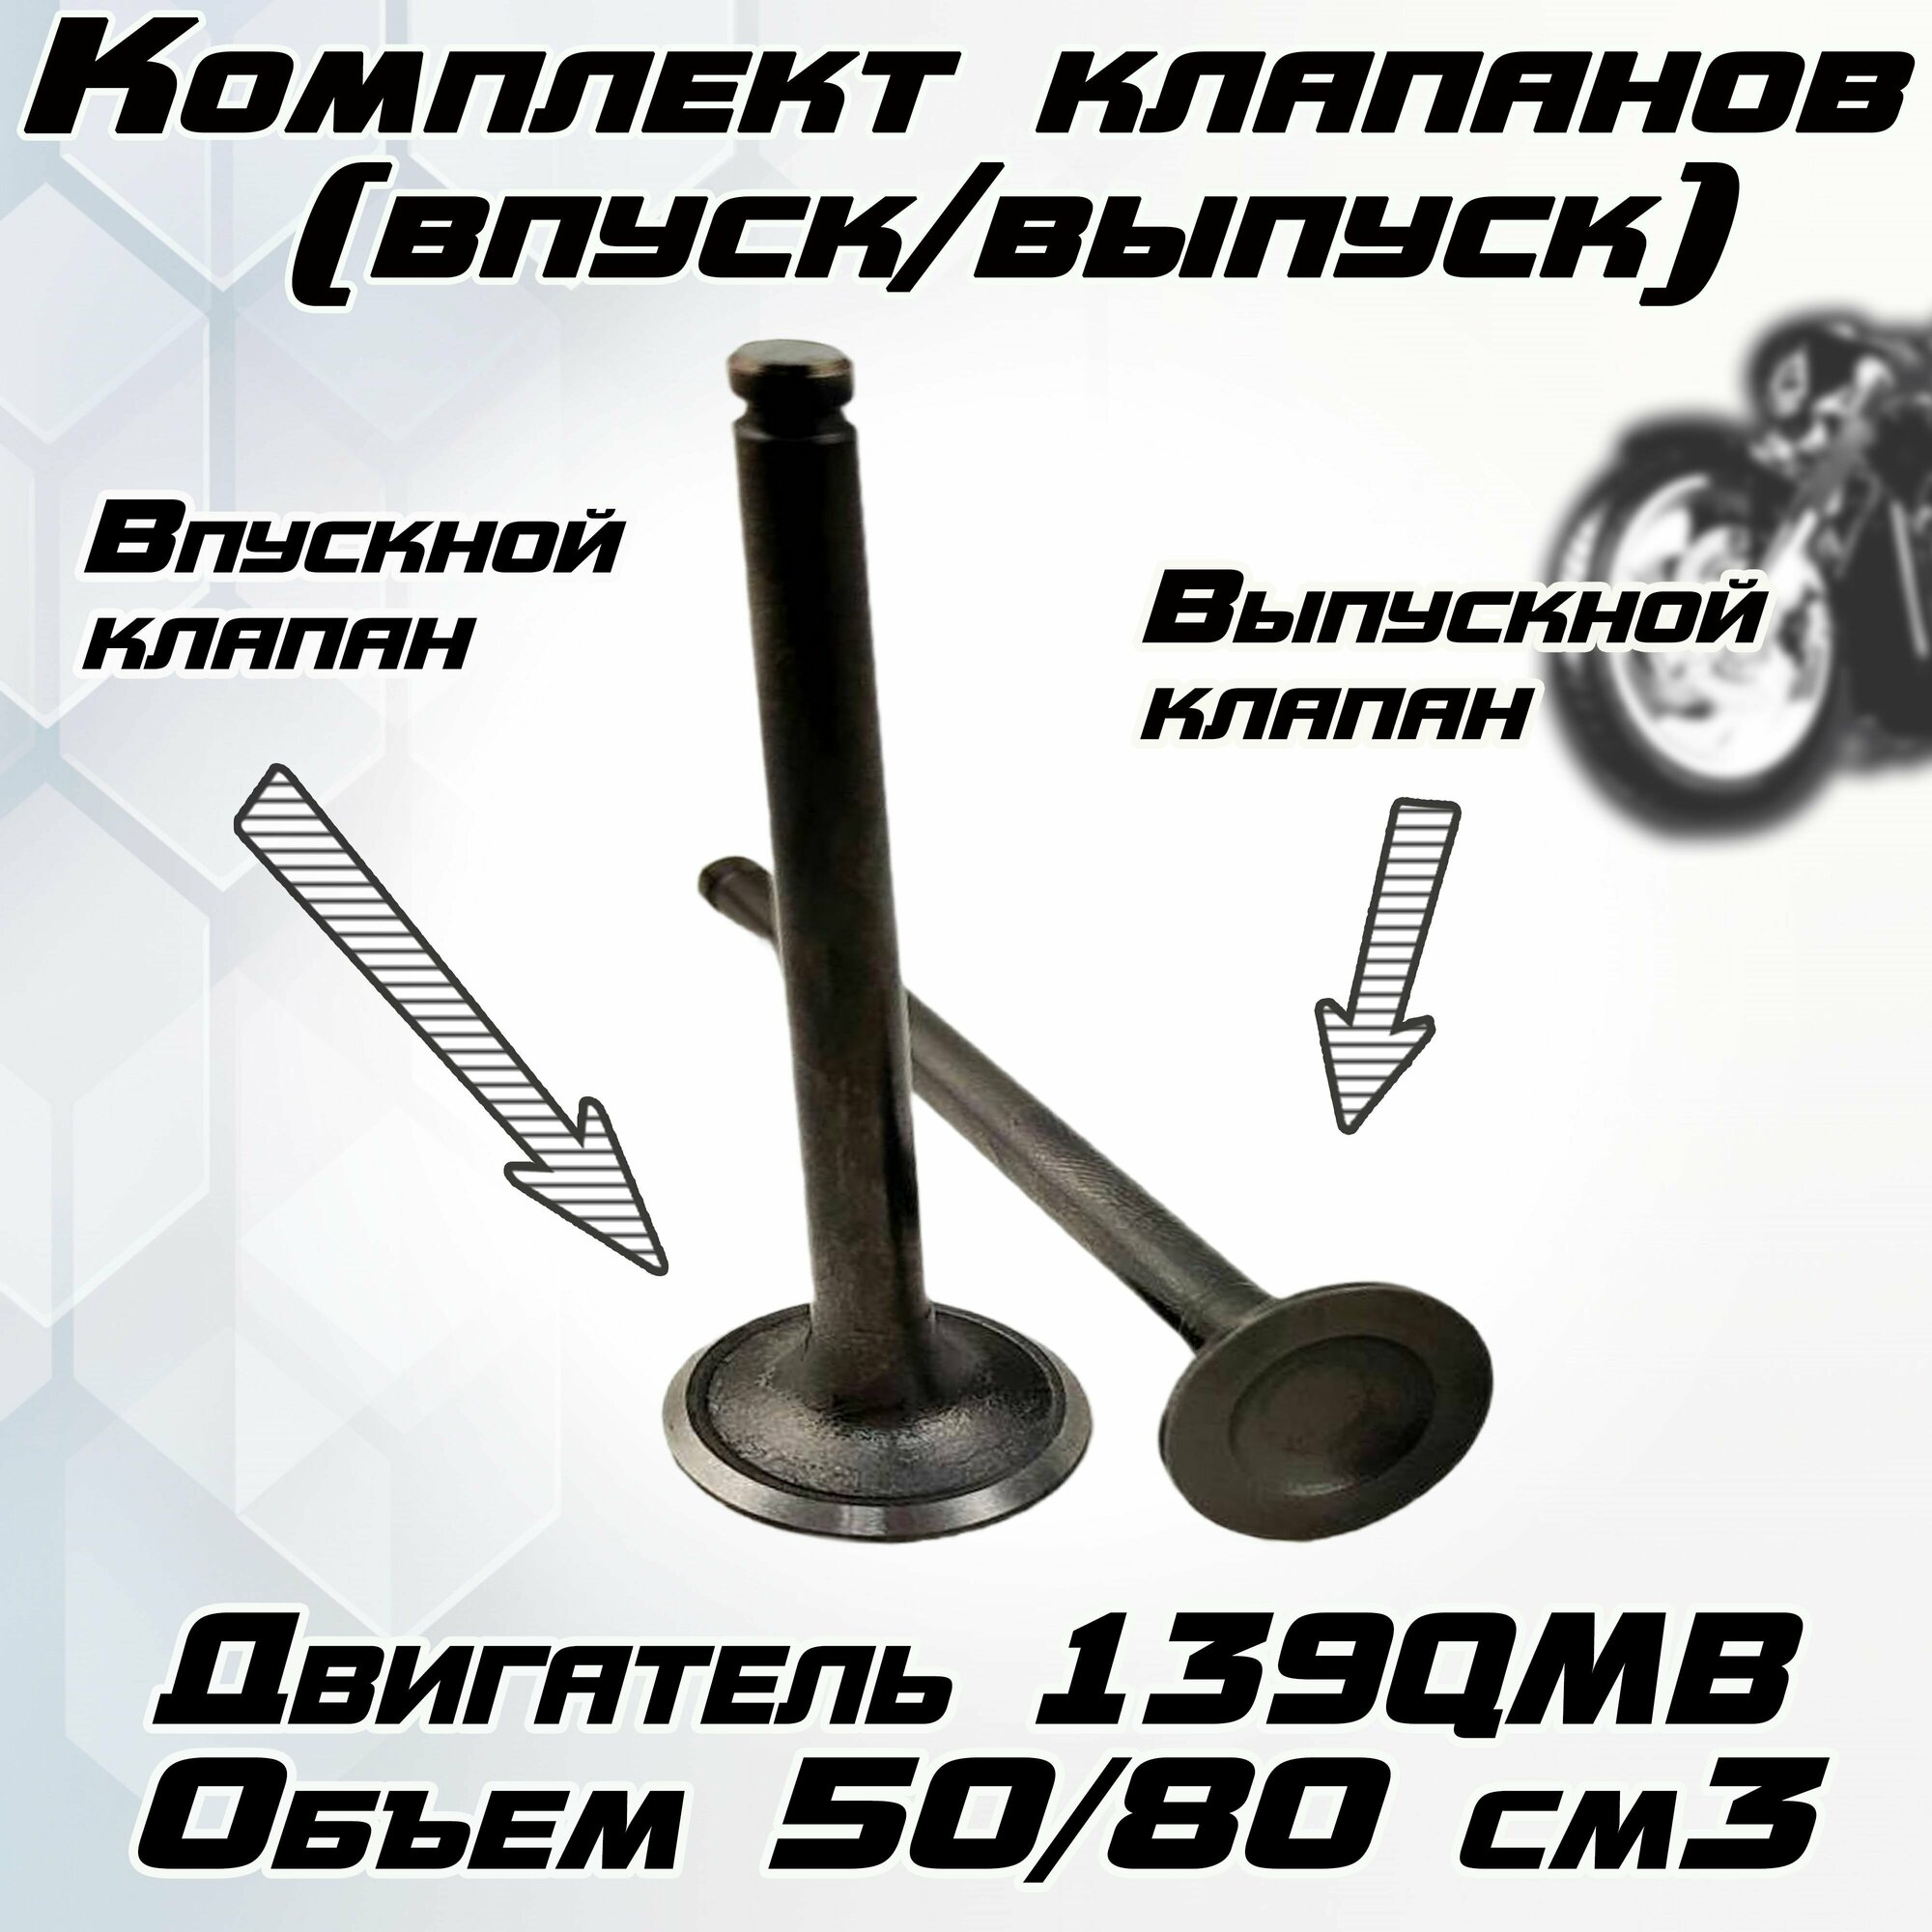 Комплект клапанов (впуск/выпуск) для скутера 139QMB 50/80 см3